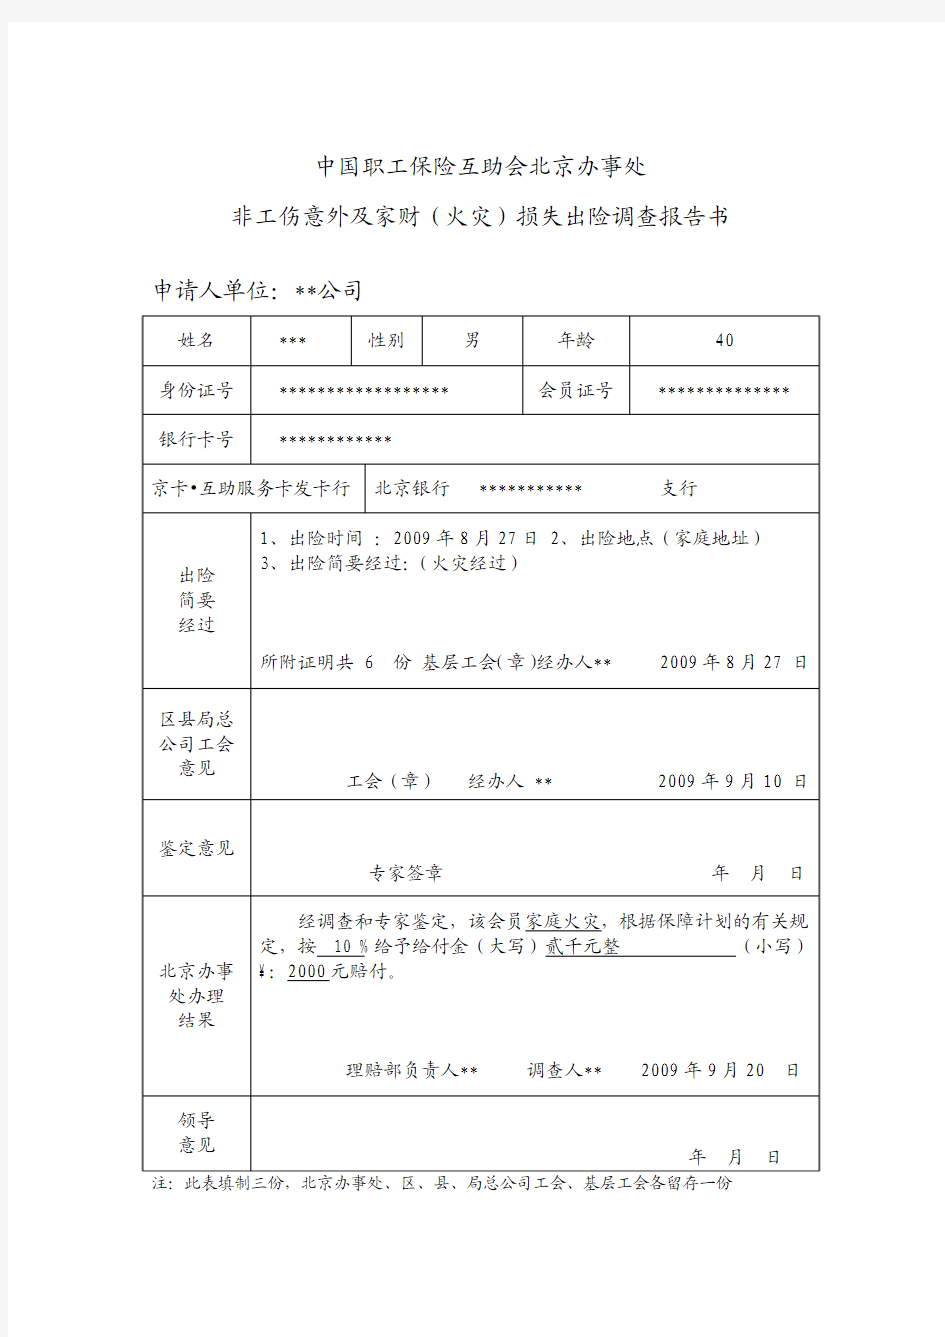 北京工会会员服务卡互助保障方案-12351职工服务网